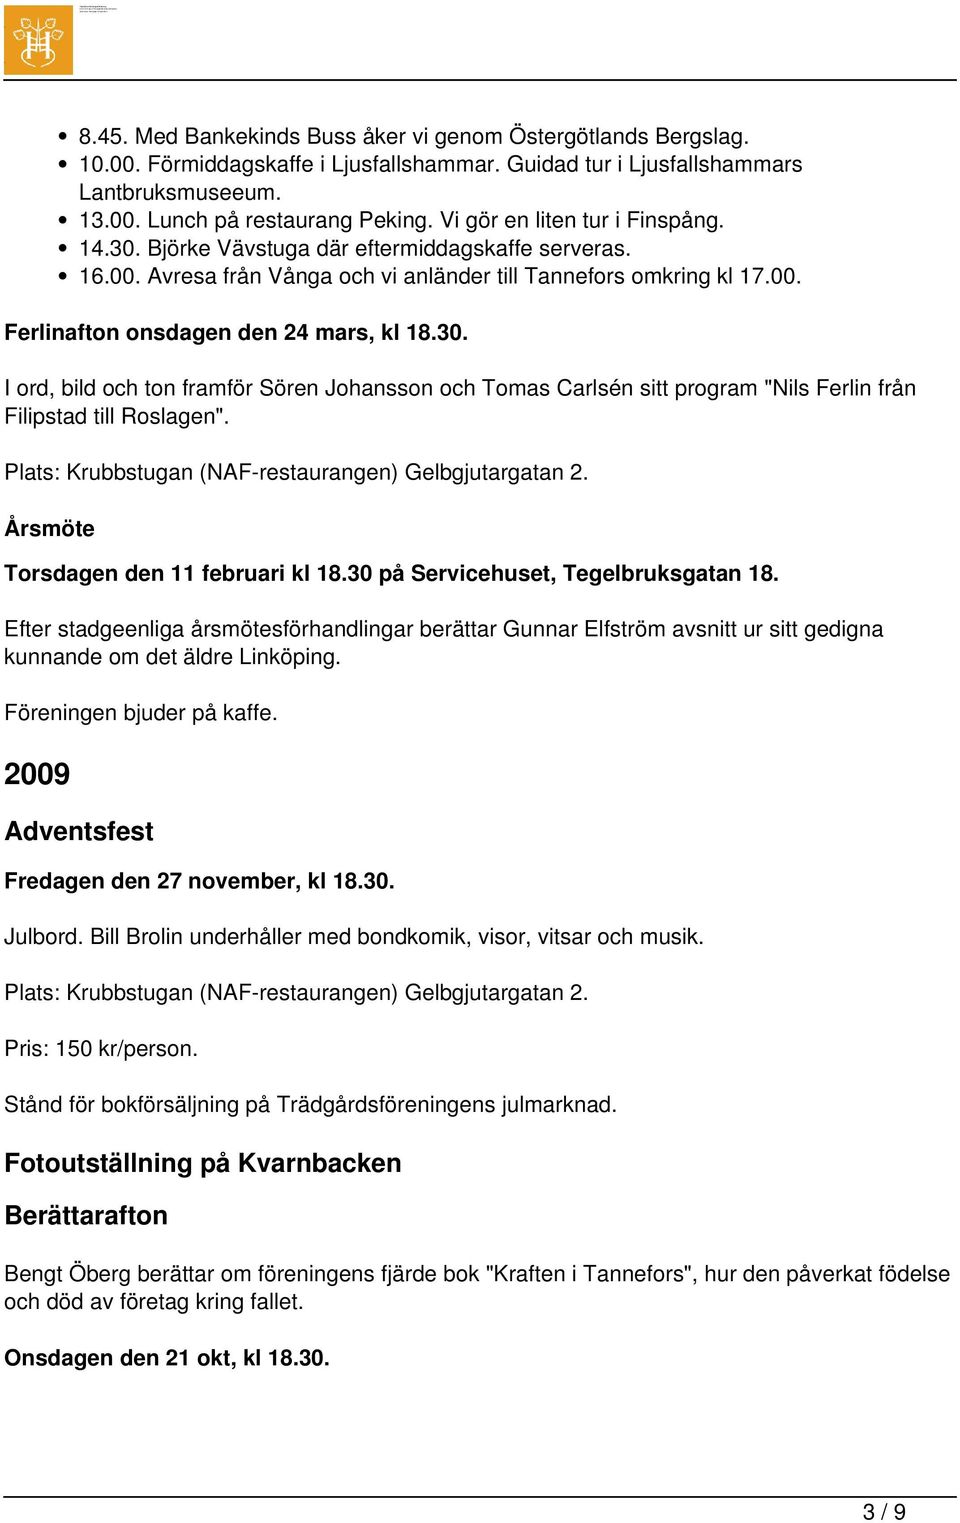 30. I ord, bild och ton framför Sören Johansson och Tomas Carlsén sitt program "Nils Ferlin från Filipstad till Roslagen". Plats: Krubbstugan (NAF-restaurangen) Gelbgjutargatan 2.